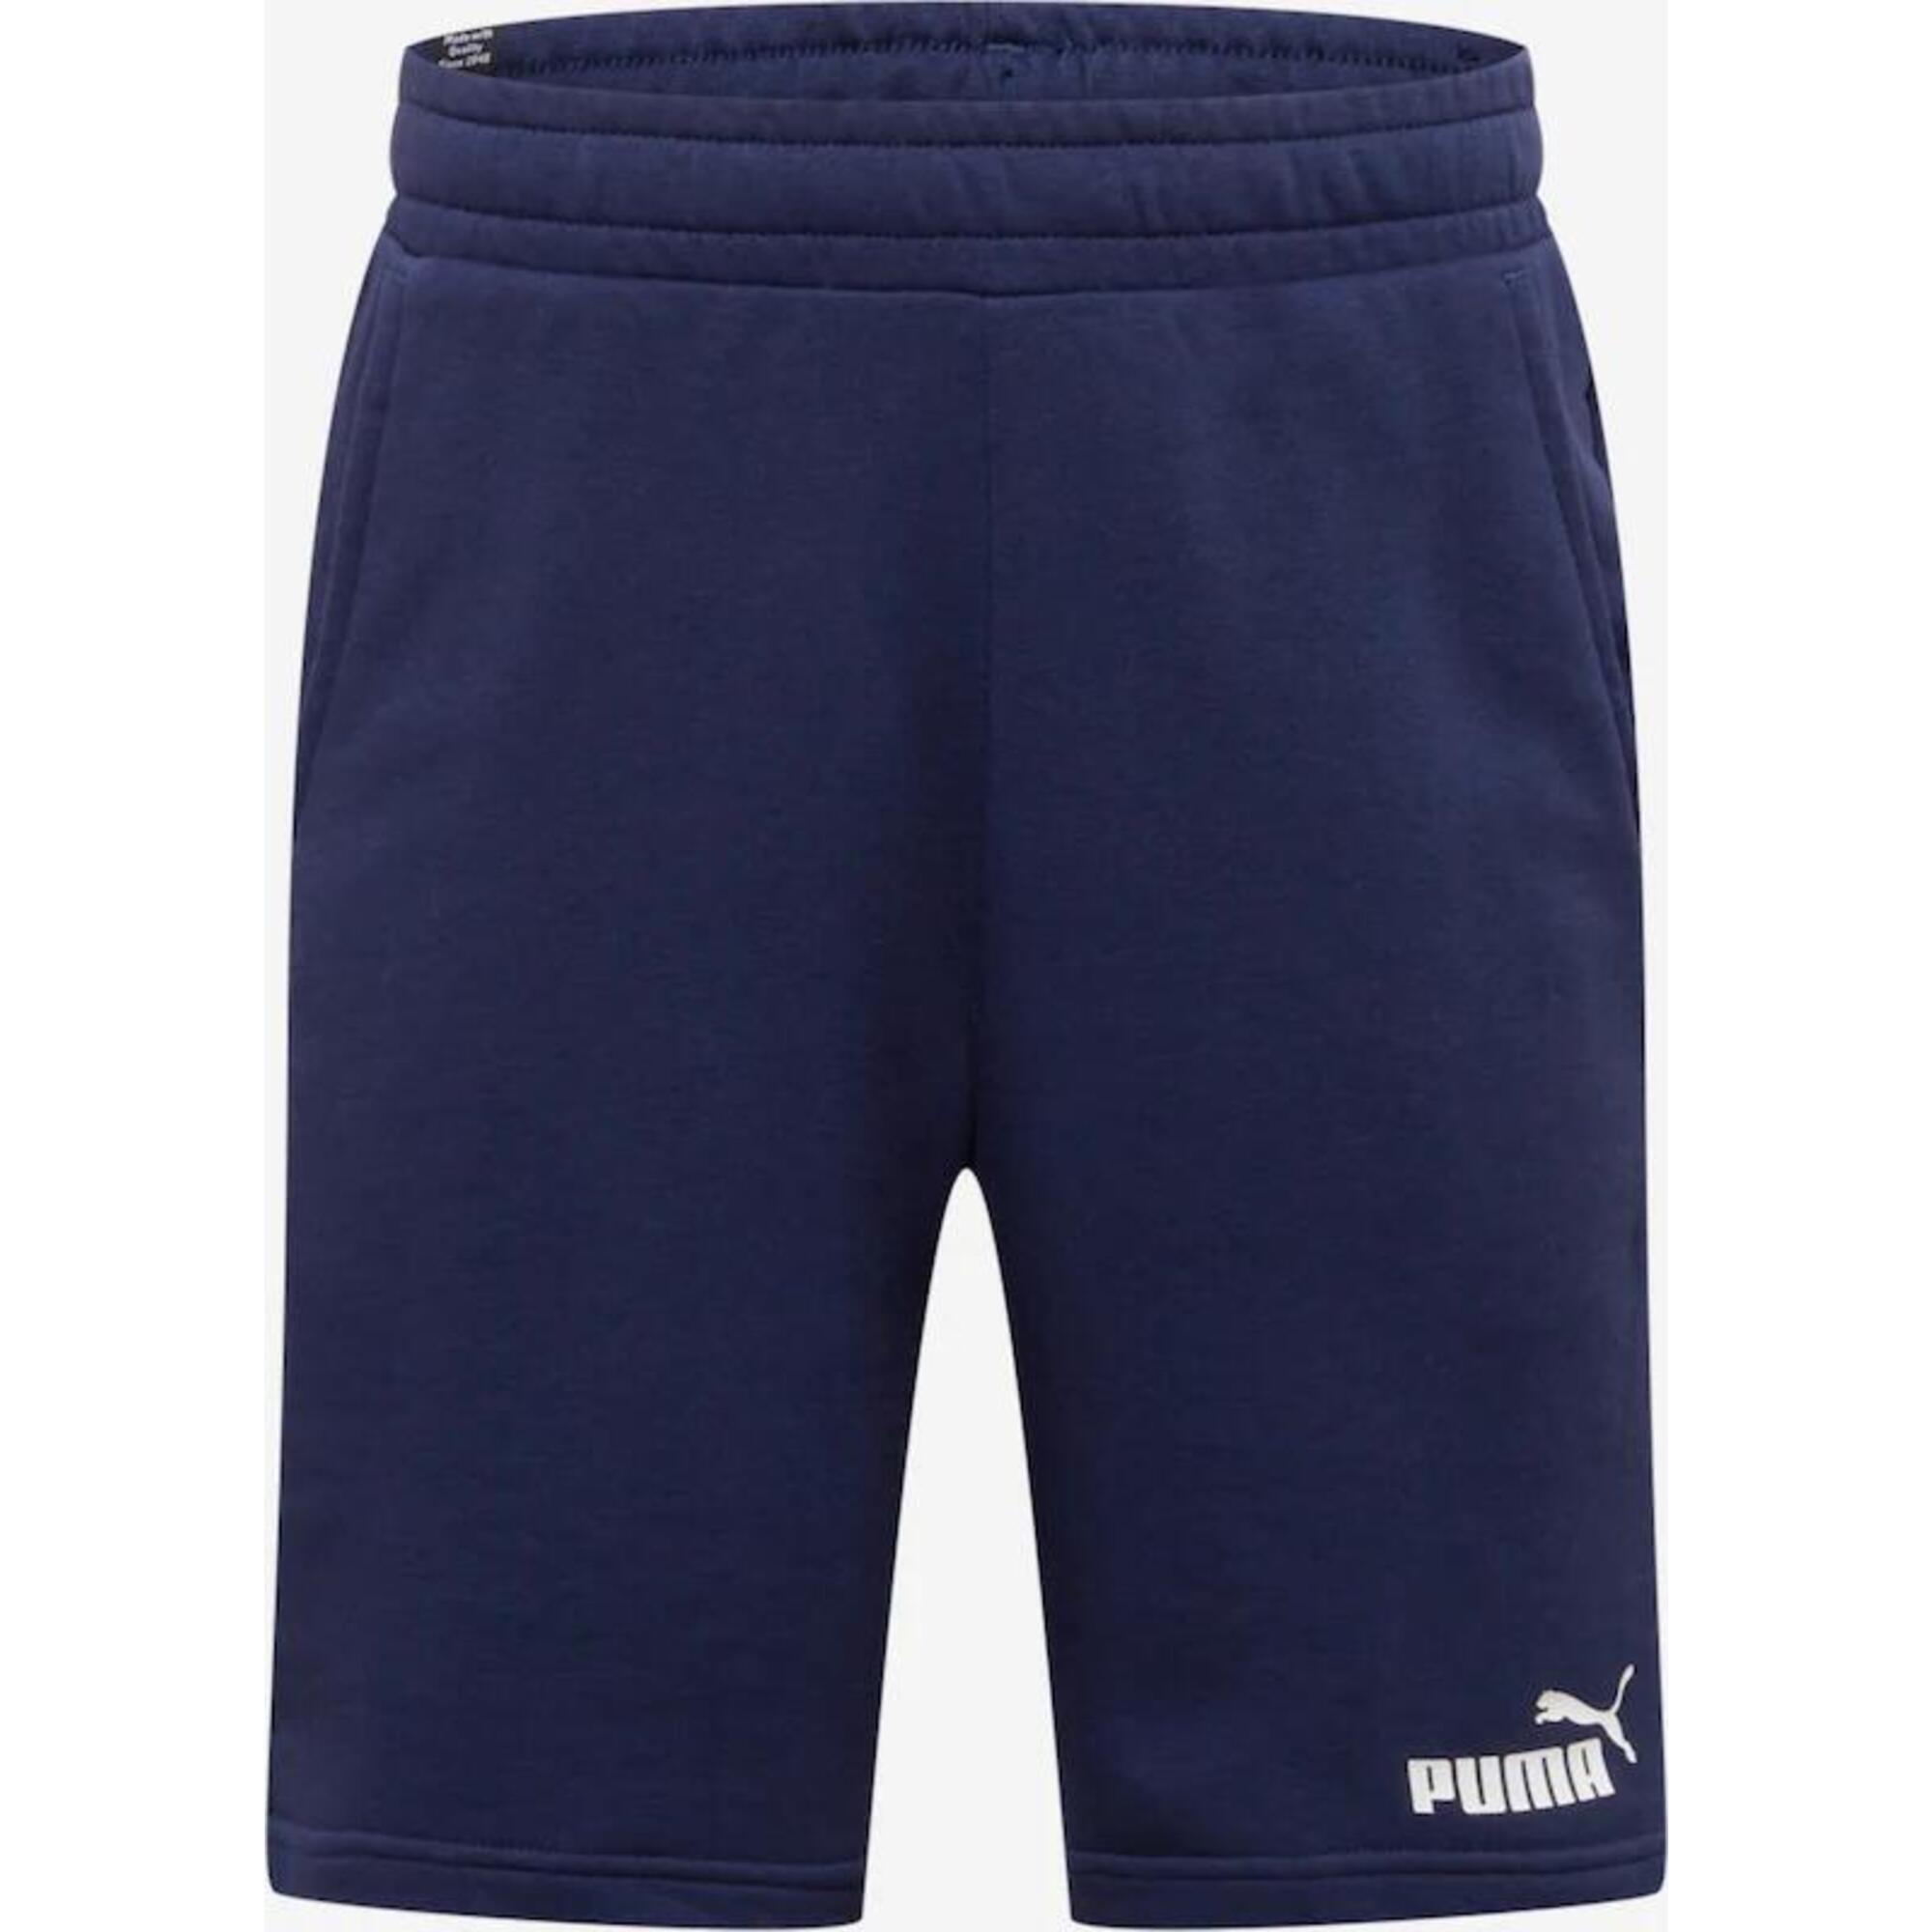 PUMA Puma Mens ESS 10" Shorts, Peacoat